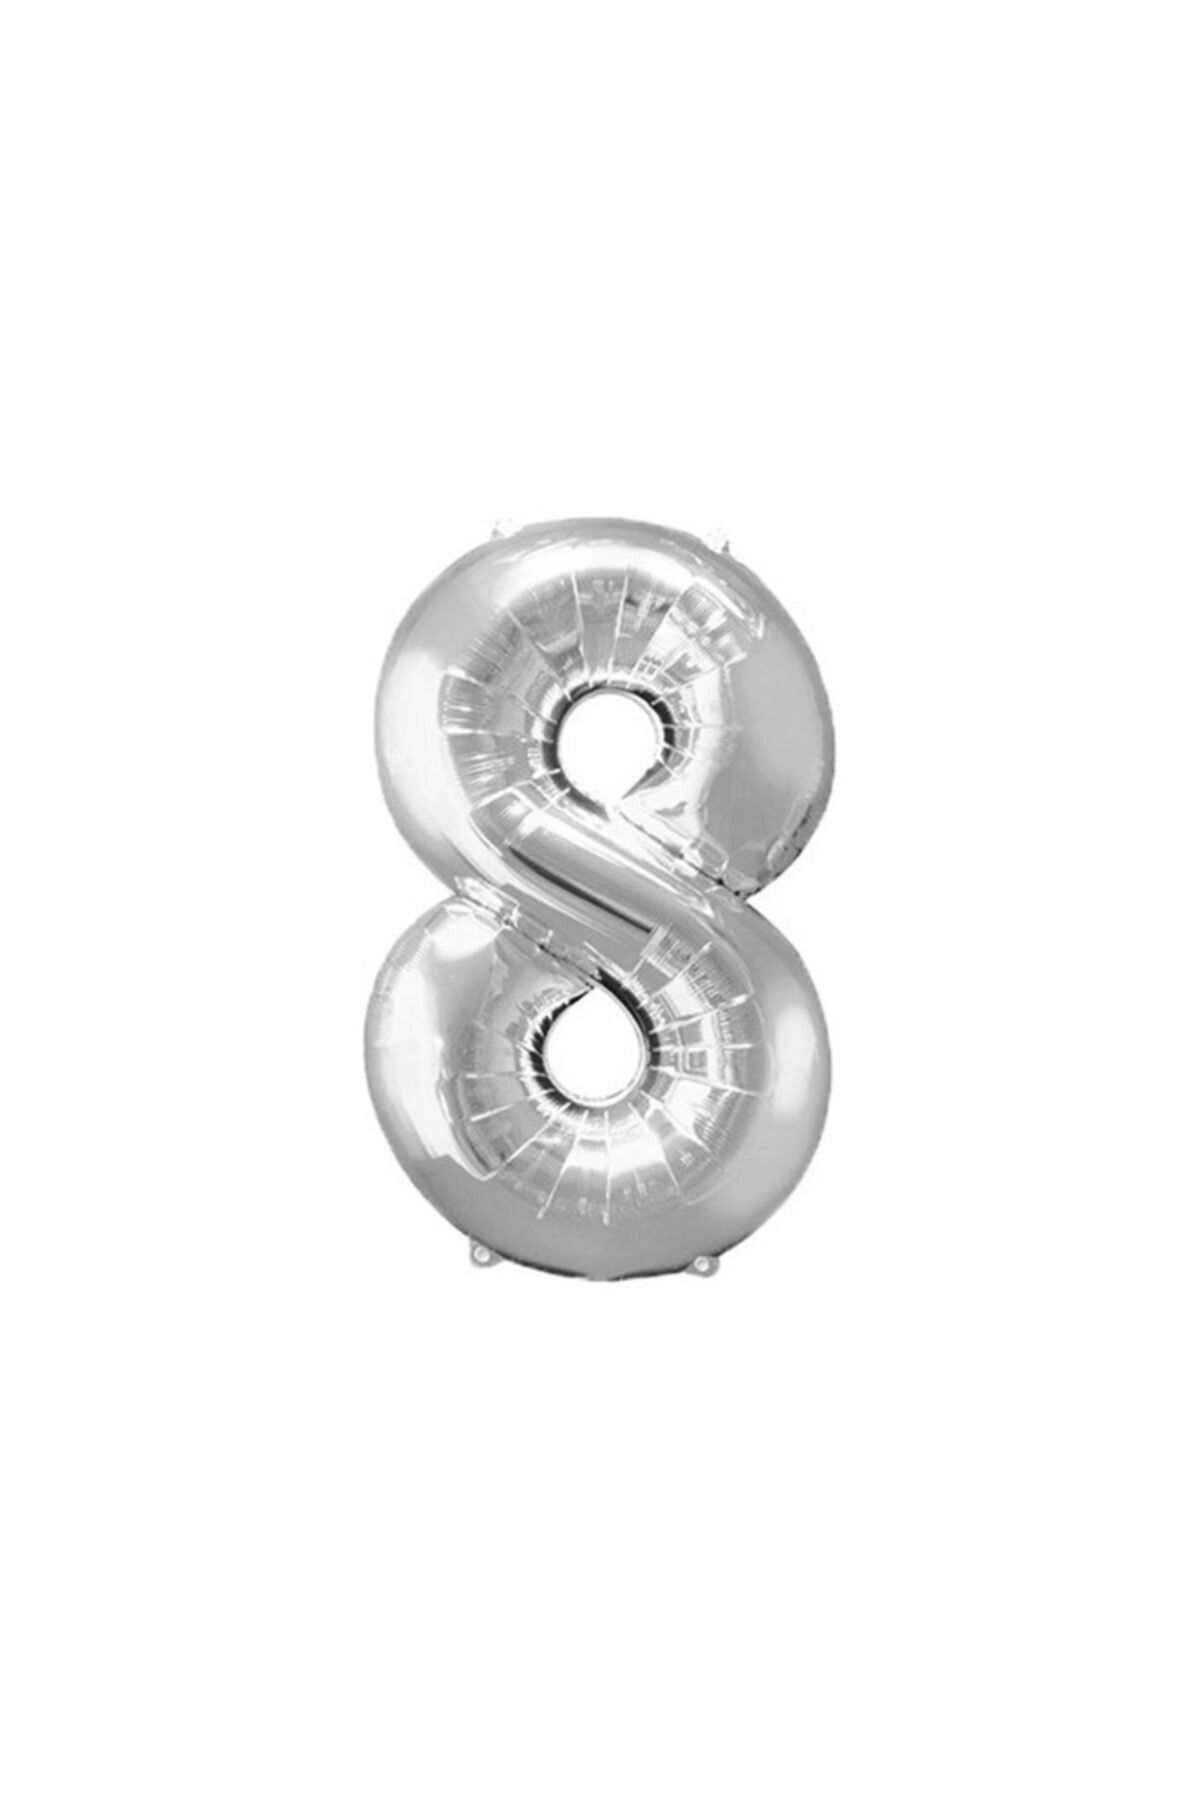 Ece Folyo Gümüş 8 Sayı Balon Büyük Boy 100 cm Helyum Kaliteli Organizasyon Doğum Günü Eğlence Söz Nişan